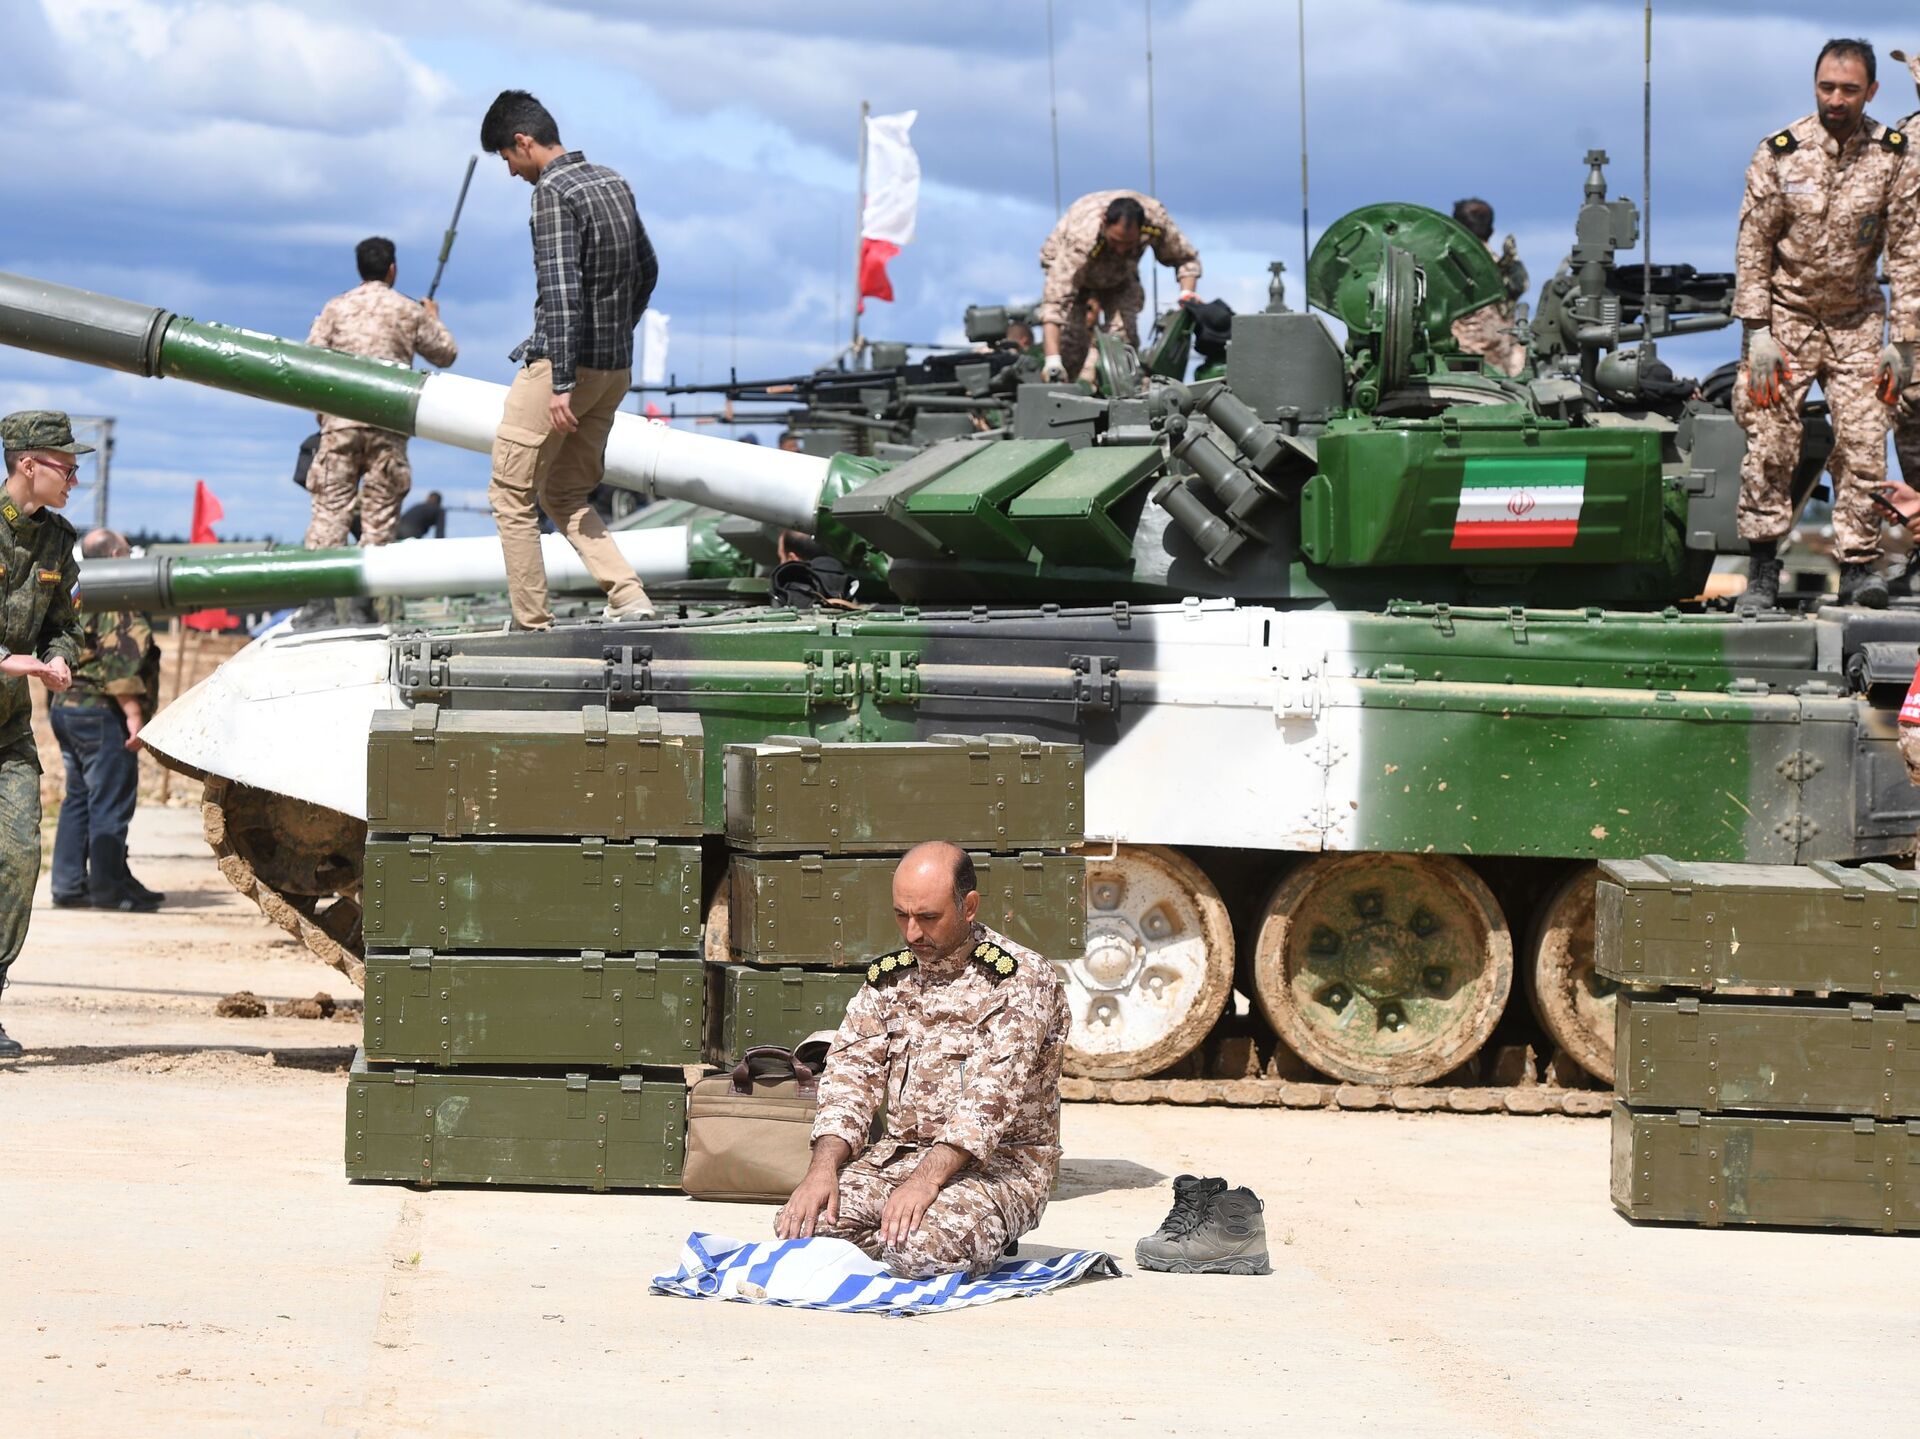 Ադրբեջանի հետ սահմանին Իրանի ԻՀՊԿ ցամաքային ուժերը զորավարժություններ են մեկնարկել